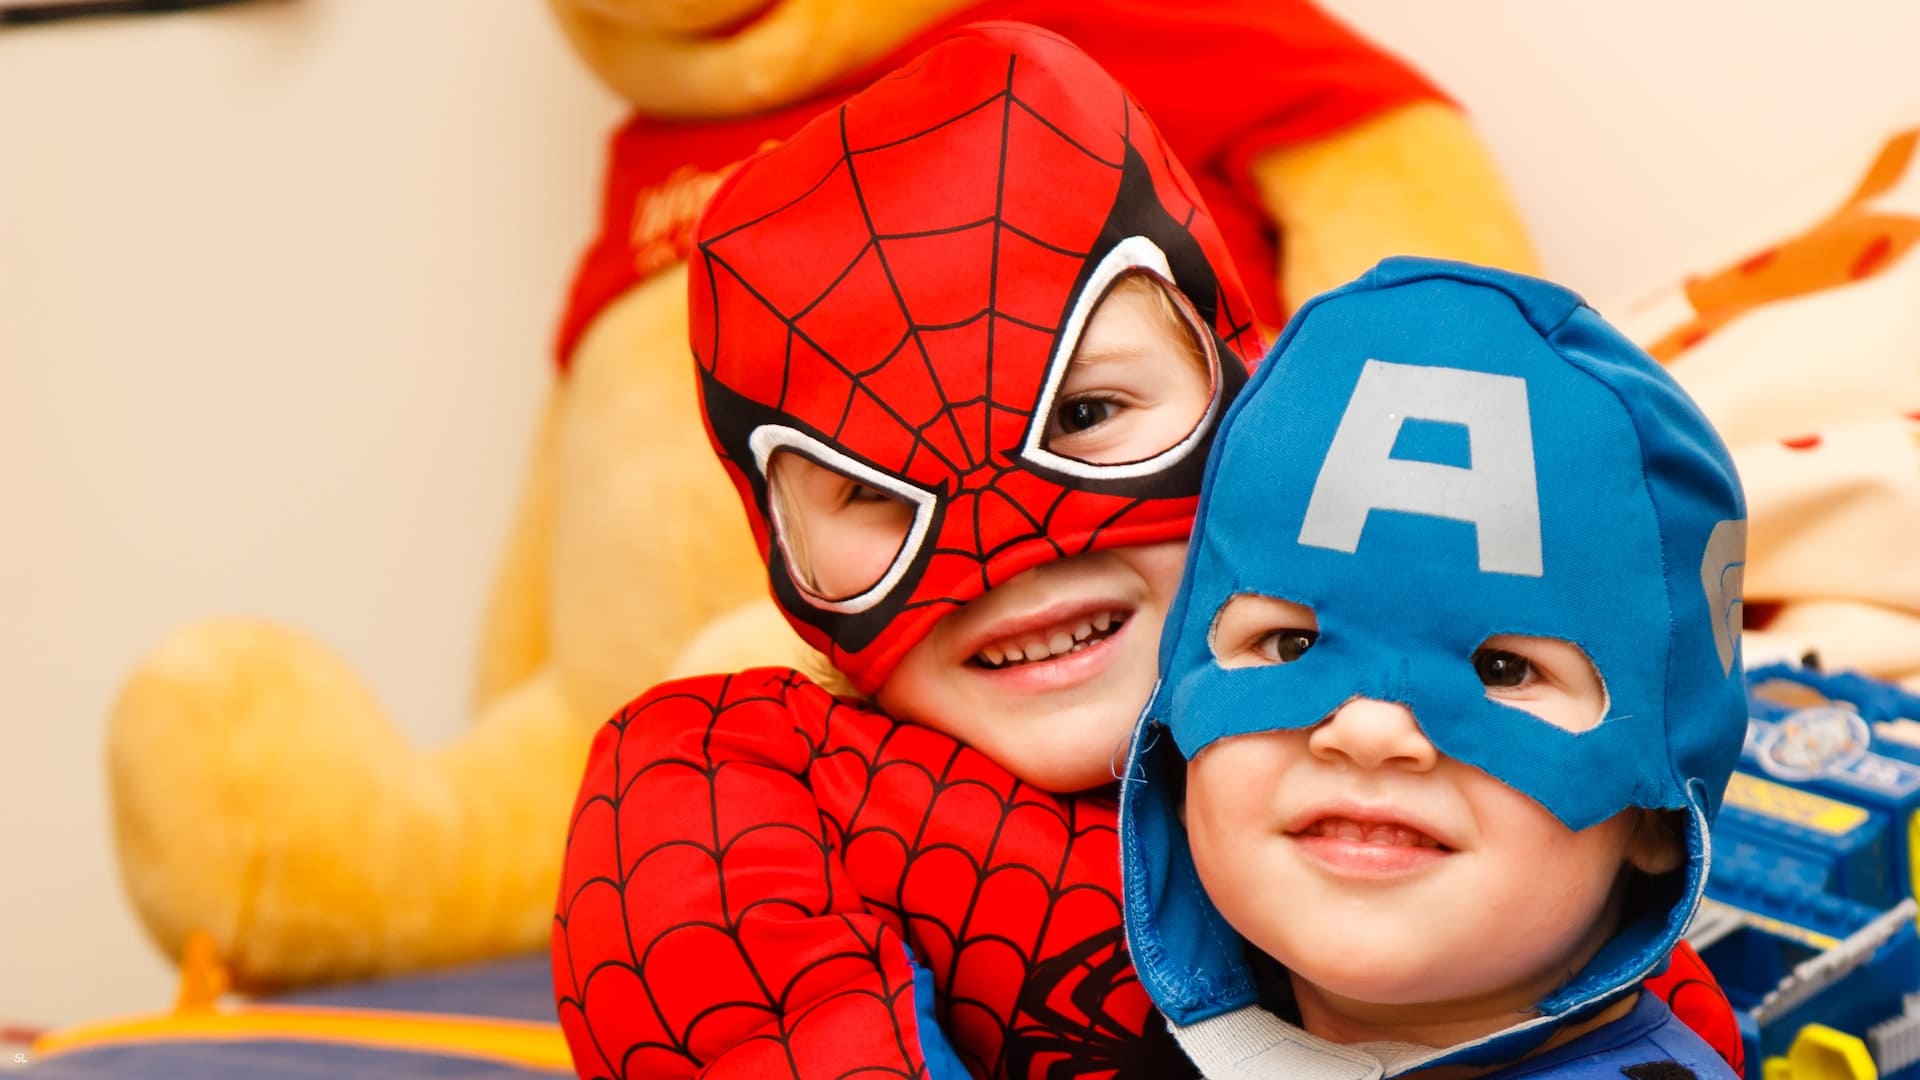 Foto colorida com duas crianças autistas no carnaval, usando fantasia de super-heróis. Uma com fantasia do Homem-Aranha e outra do Capitão América.